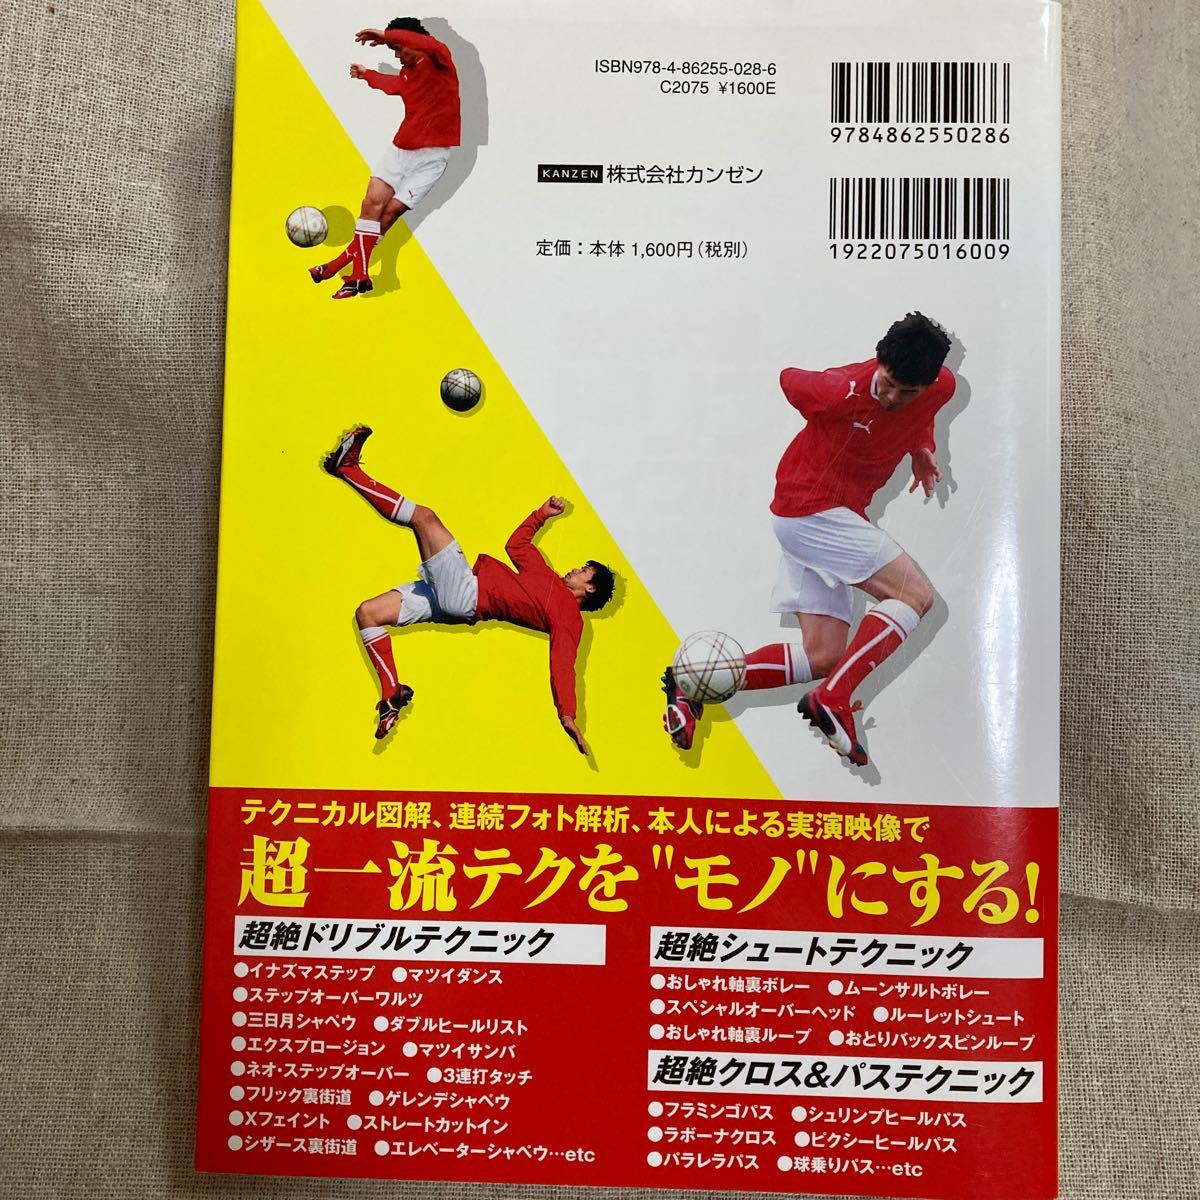 松井大輔のサッカードリブルバイブル DVD抜き技&魅せ技スペシャル